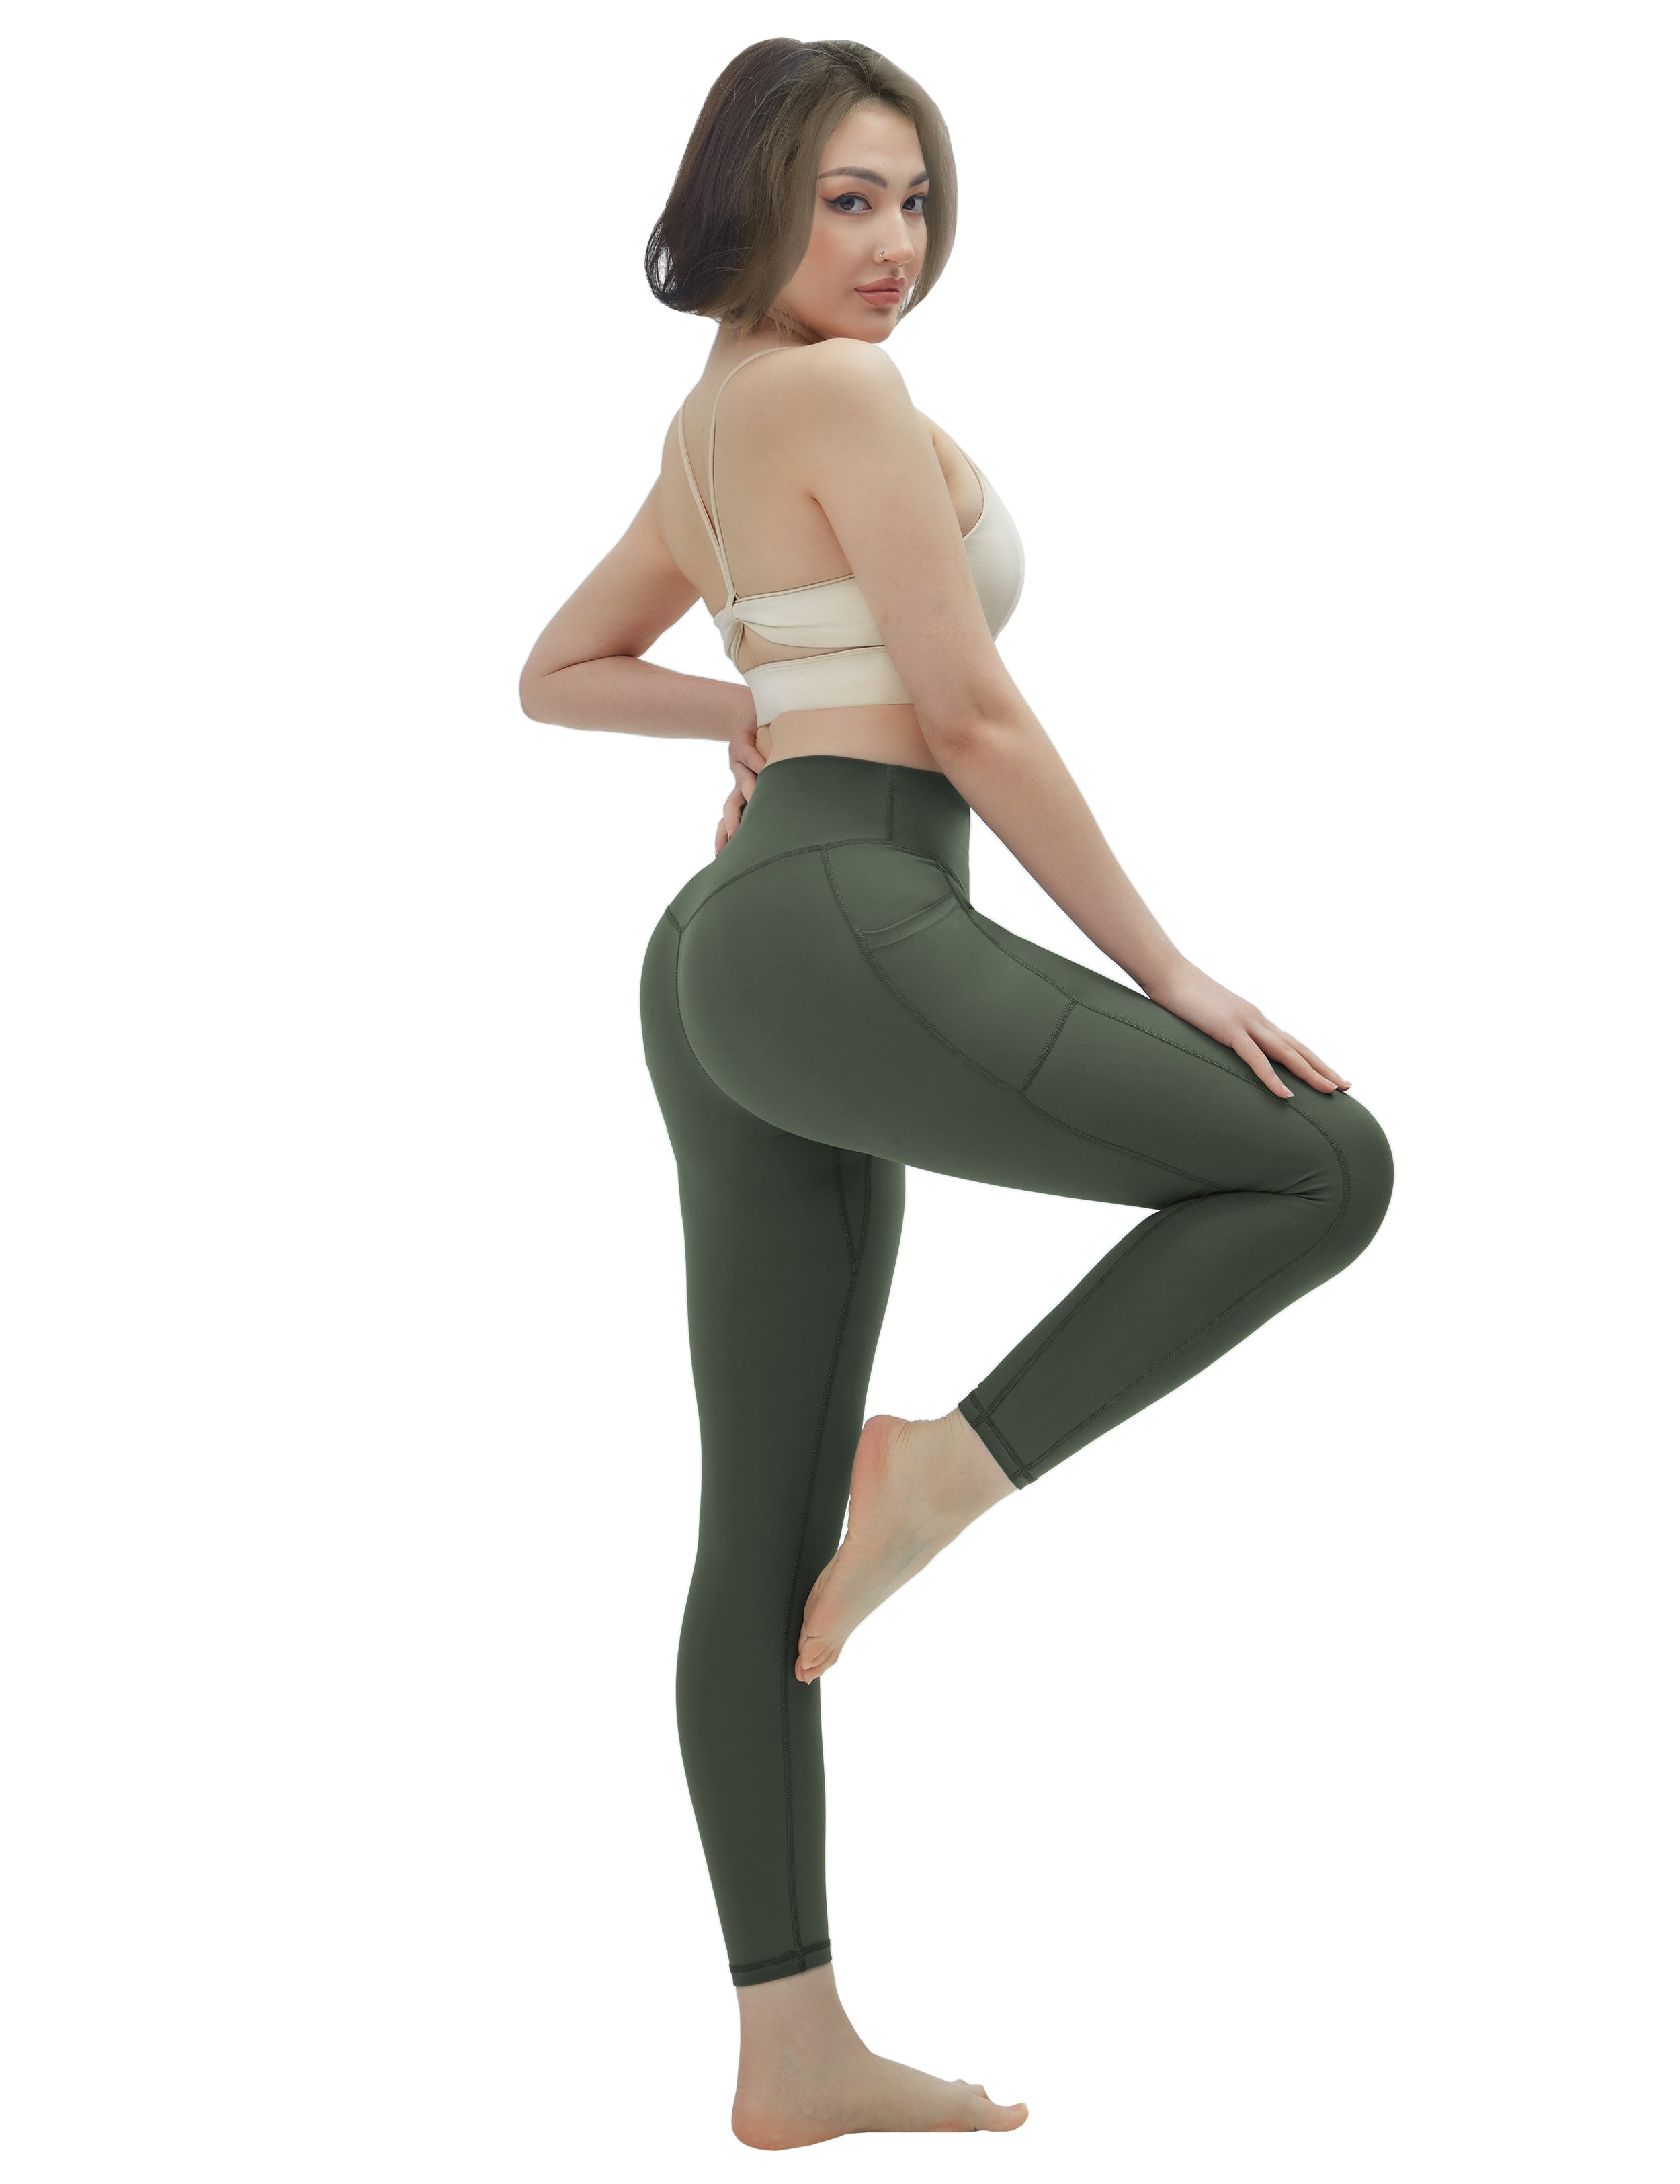 High Waisted Yoga Pants 7/8 Length Leggings with Pockets olivegreen_yo –  bubblelime